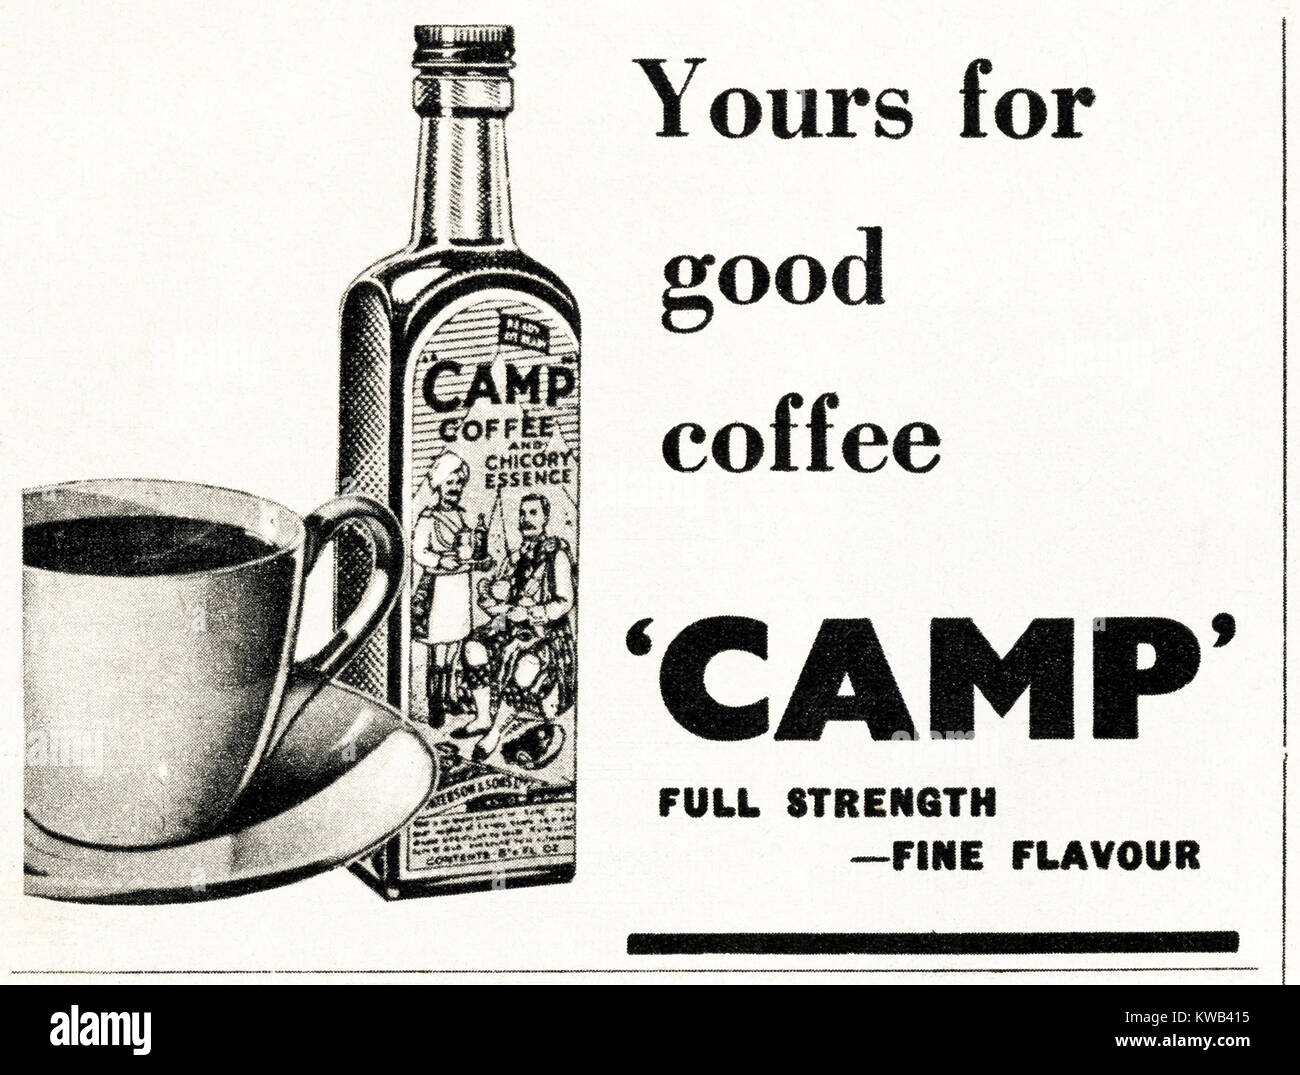 1940s vecchio vintage originale inserzione pubblicitaria Caffè Camp con essenza di cicoria in magazine circa 1947 quando i materiali di consumo sono state ancora limitato sotto il razionamento del dopoguerra Foto Stock